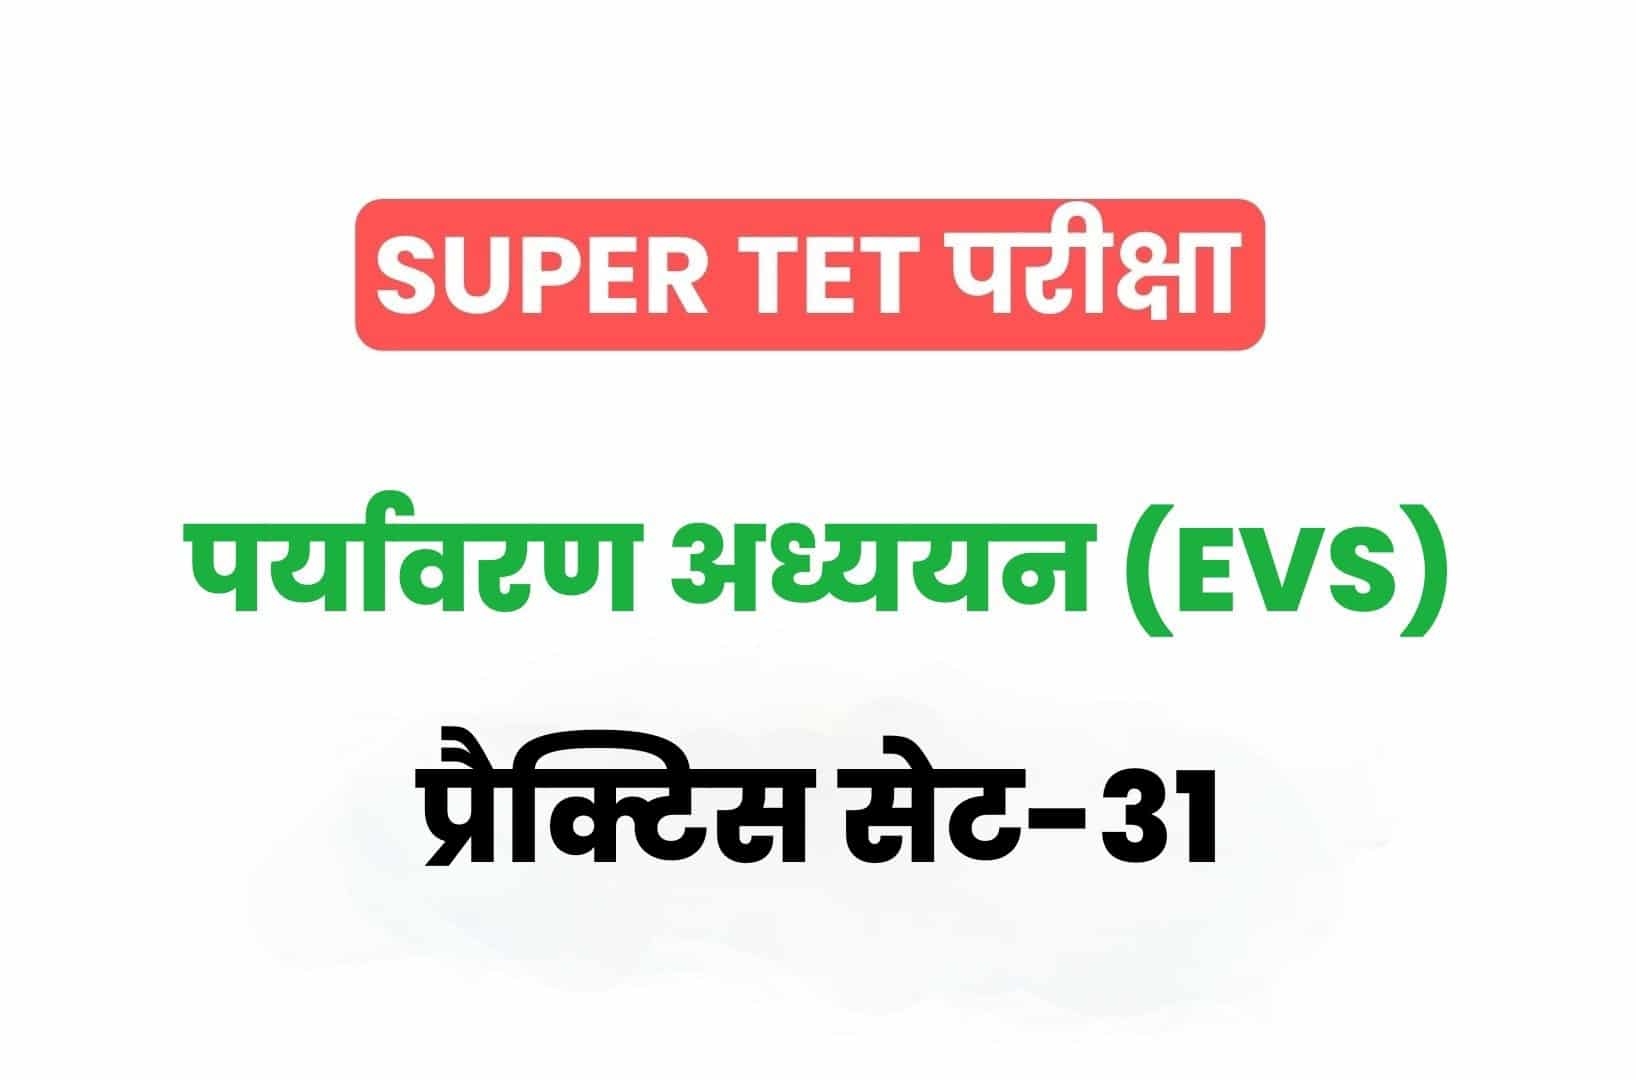 SUPER TET 2022 EVS प्रैक्टिस सेट 31: पर्यावरण अध्ययन के 15 ऐसे अतिमहत्वपूर्ण प्रश्न जो आगामी सुपर टेट परीक्षा में पूछे जा सकते हैं, जरूर अध्ययन करें